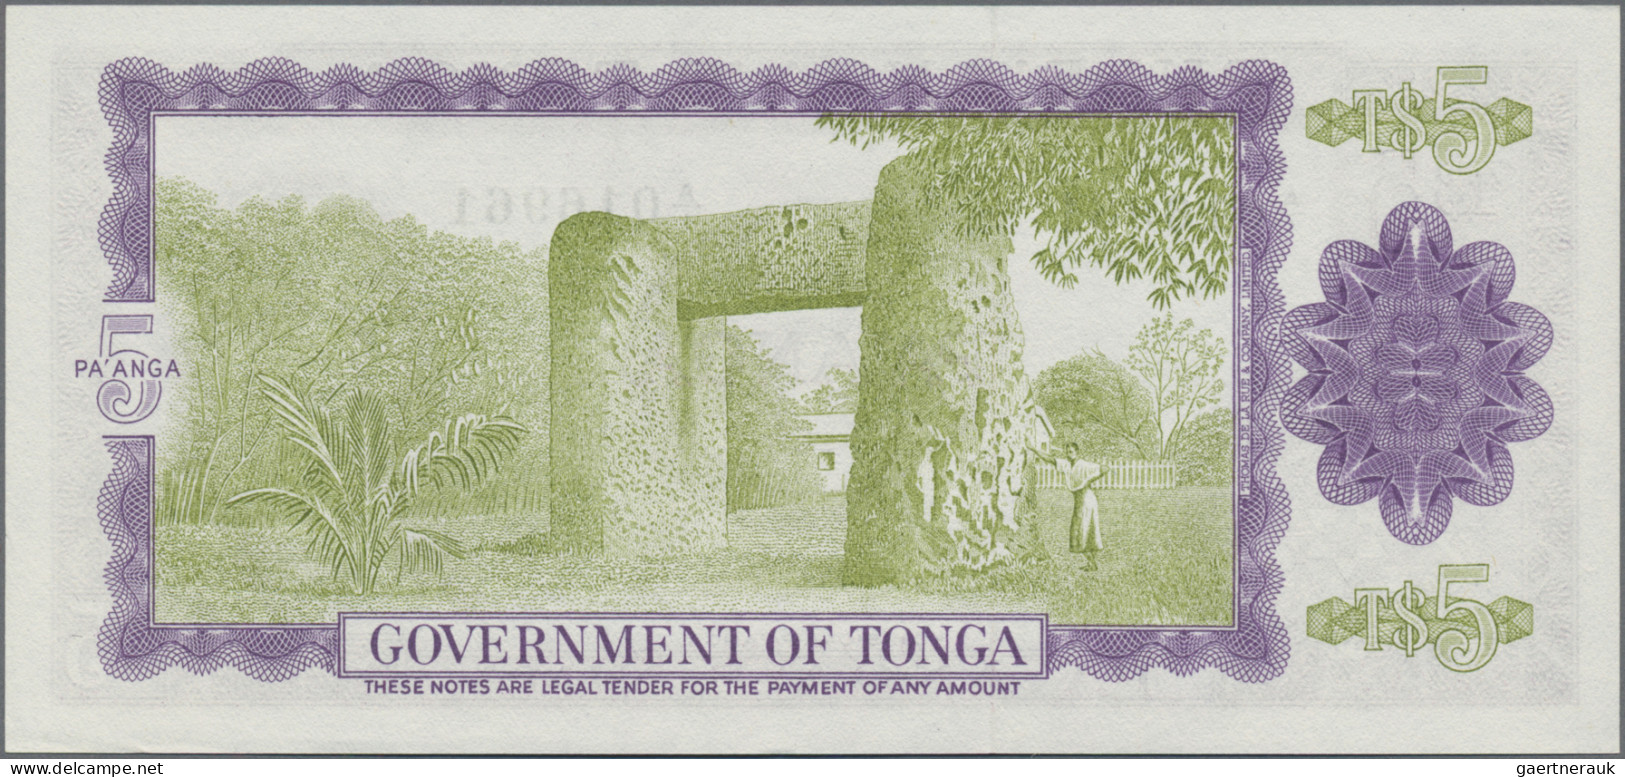 Tonga: Government Of Tonga, 5 Pa'anga, 3rd April 1967, P.16a In UNC Condition. - Tonga